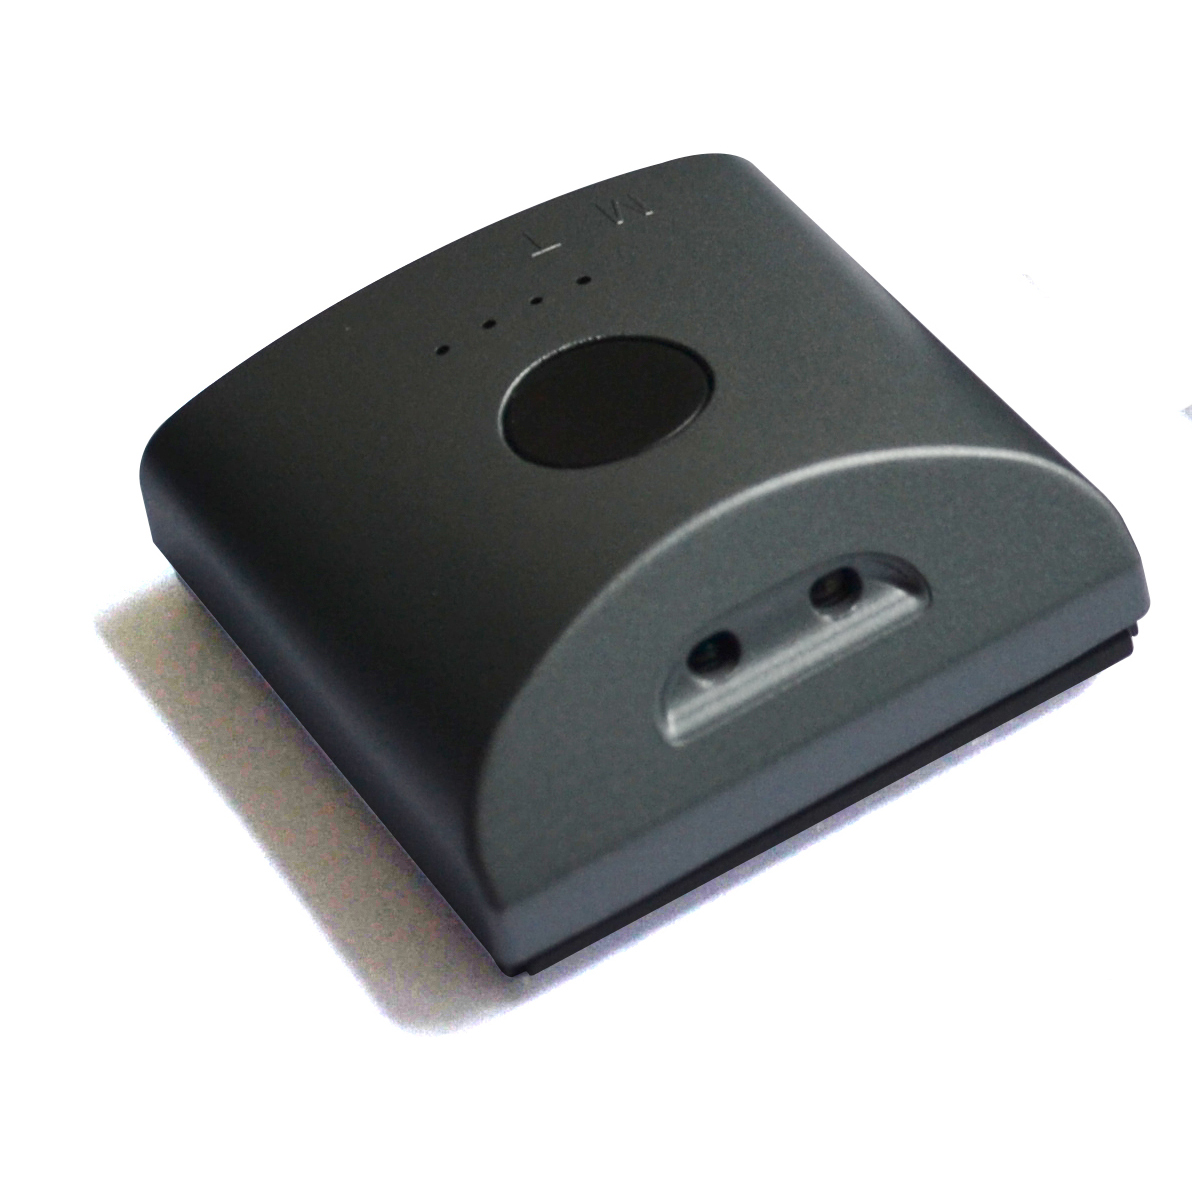 多微达尔2.4GHz无线人体感应开关门碰感应器衣柜橱柜智能开关手扫控制器